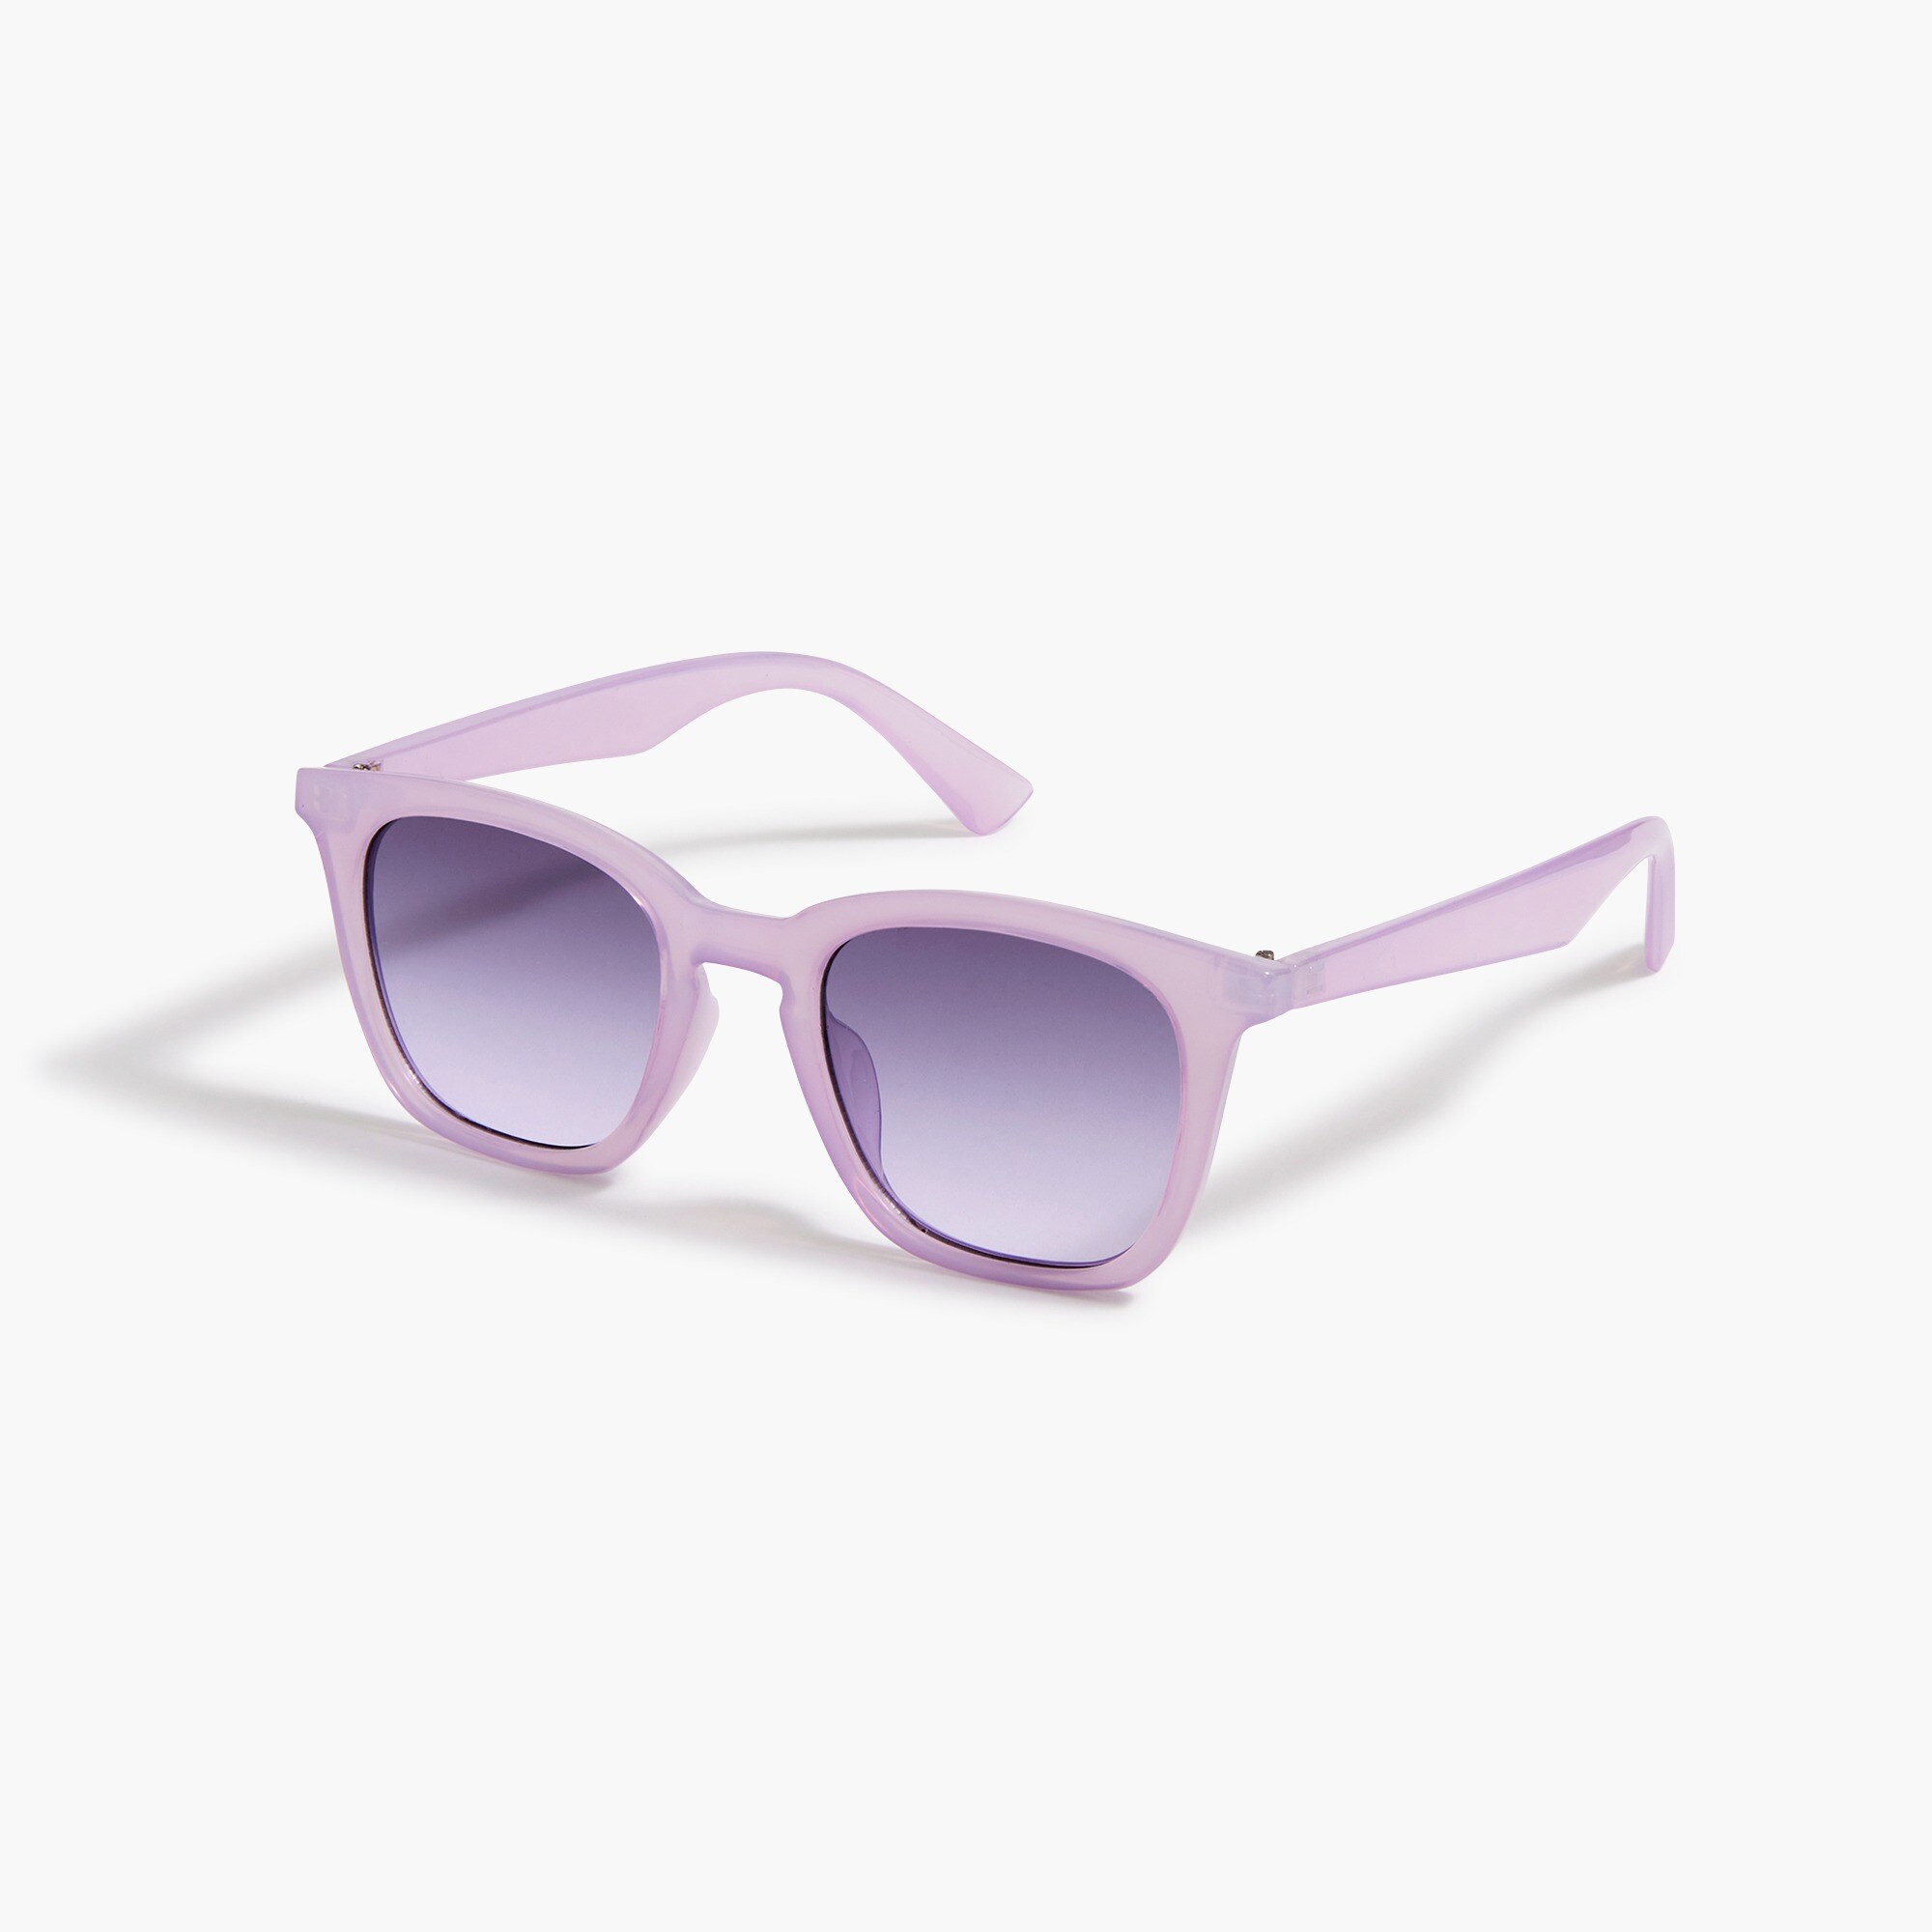  Square-frame sunglasses